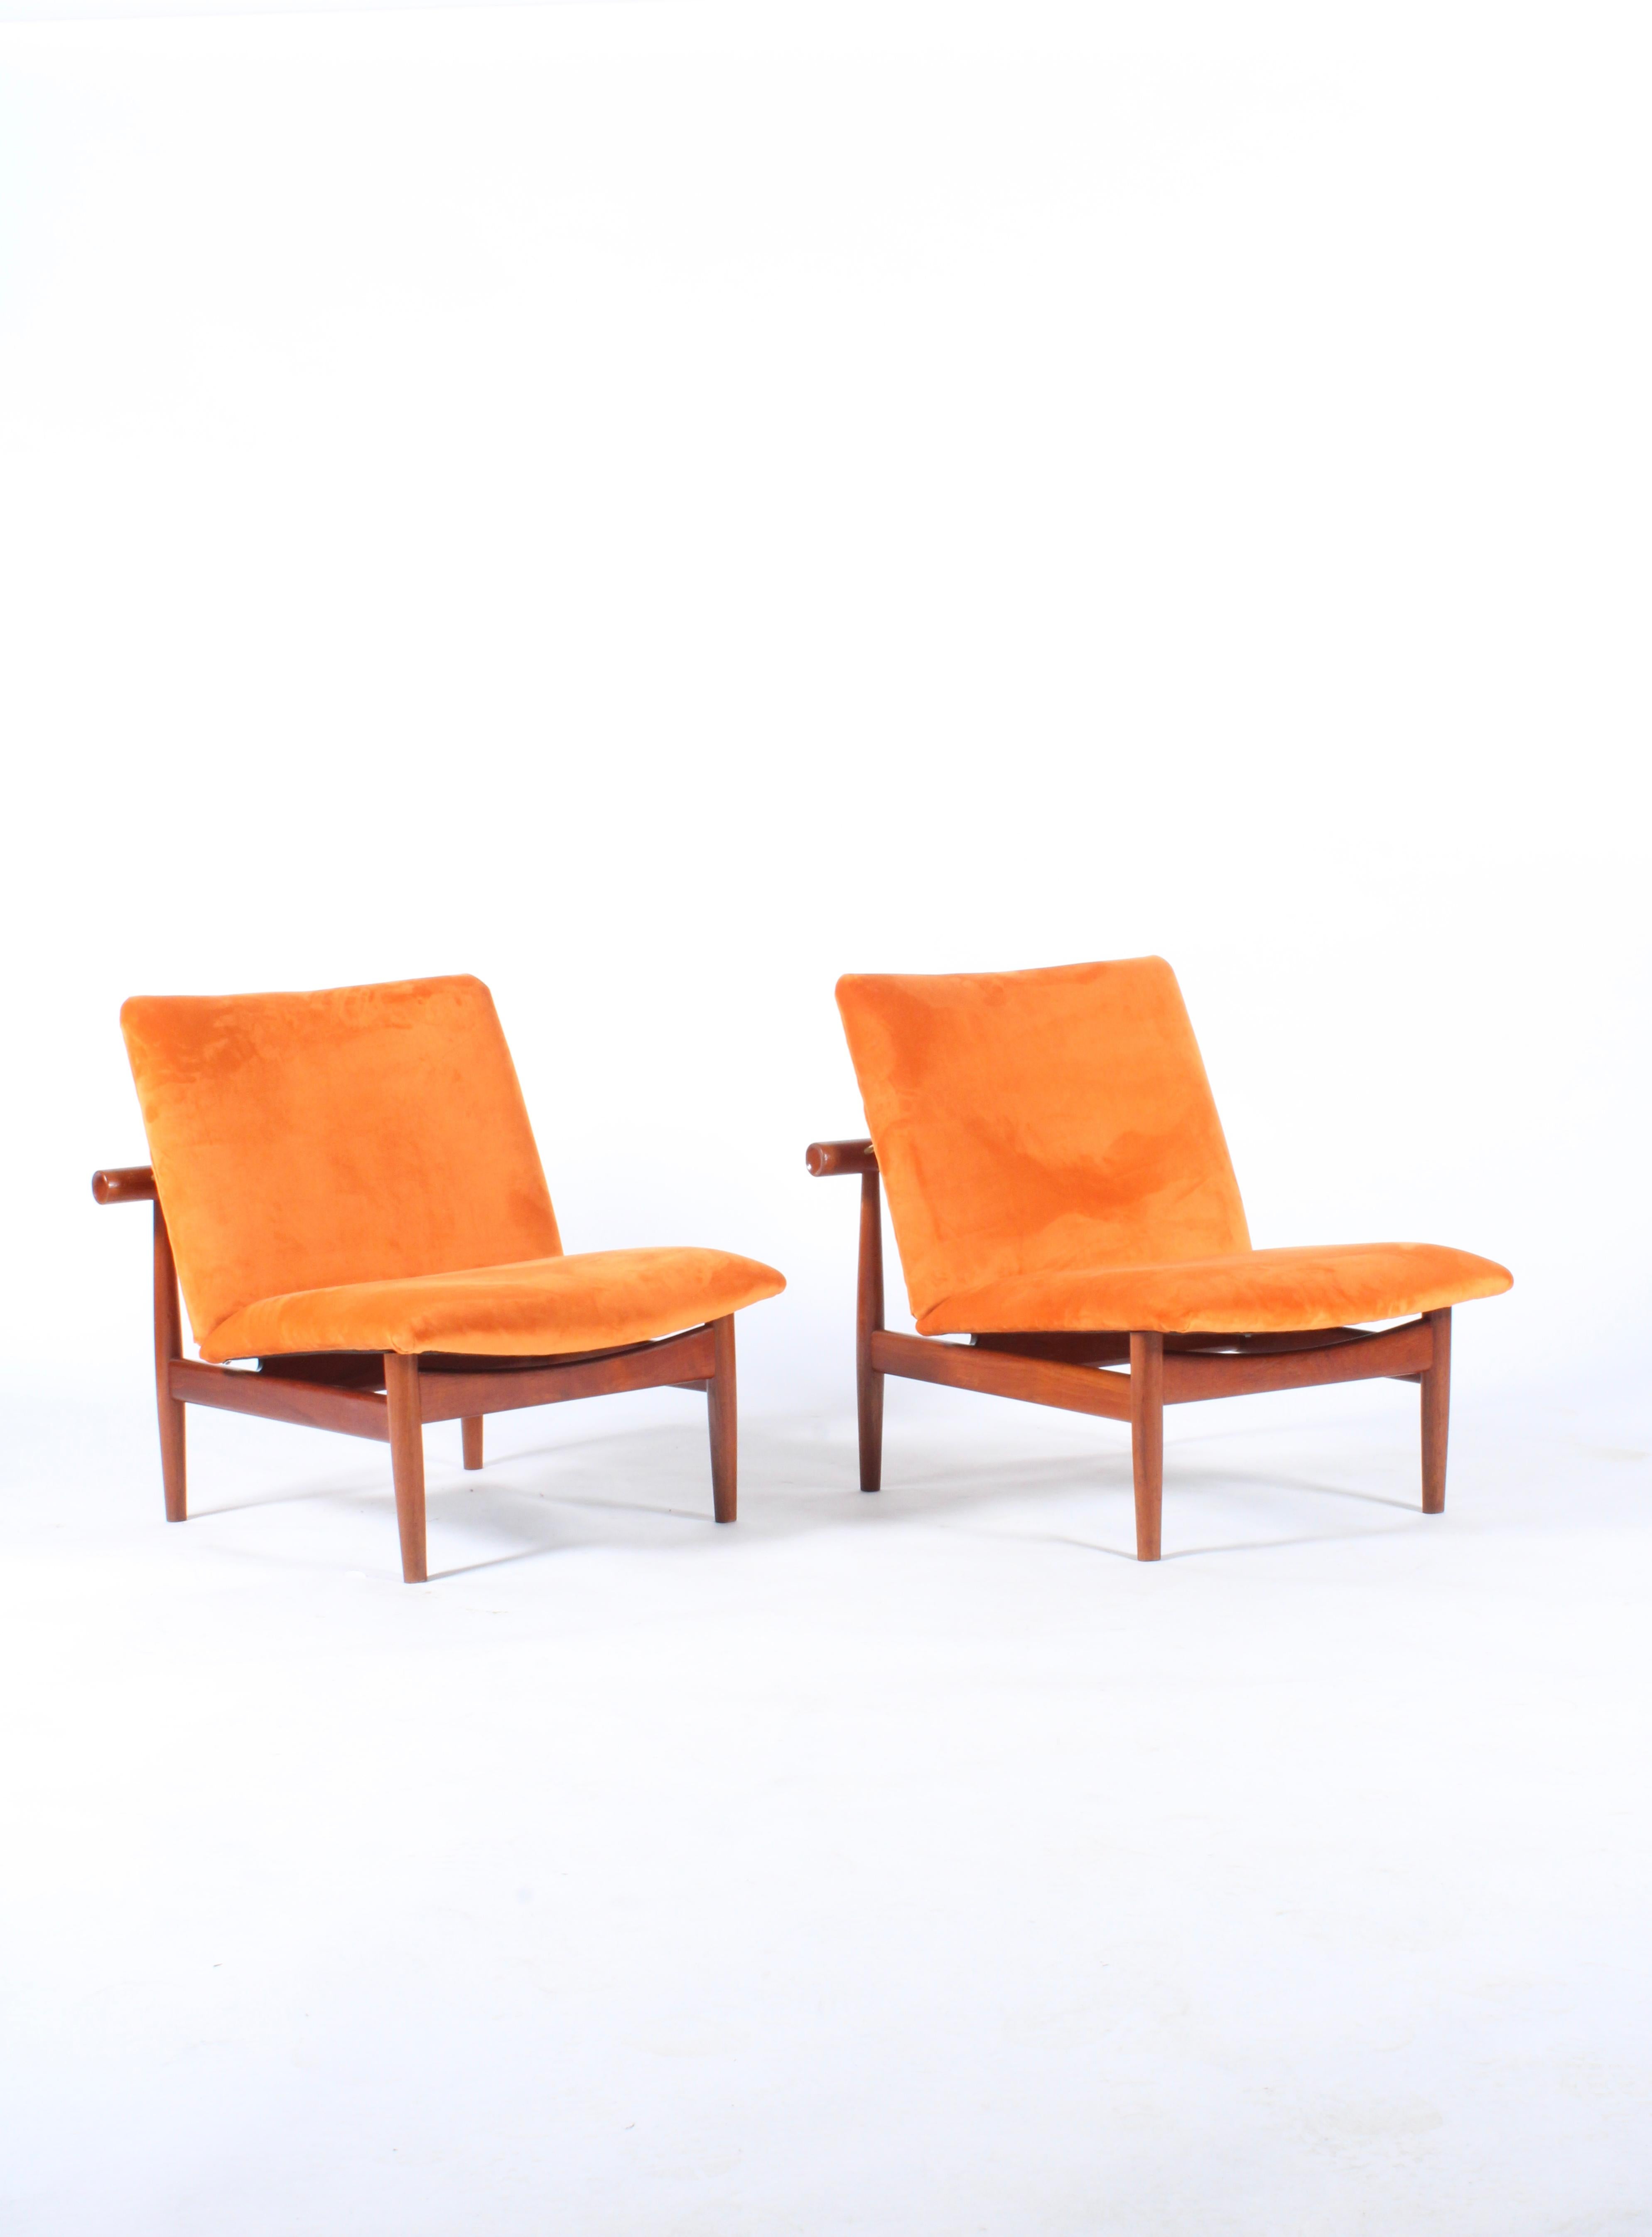 Pair of Iconic Danish Design Japan Chairs by Finn Juhl for France & Daverkosen 9